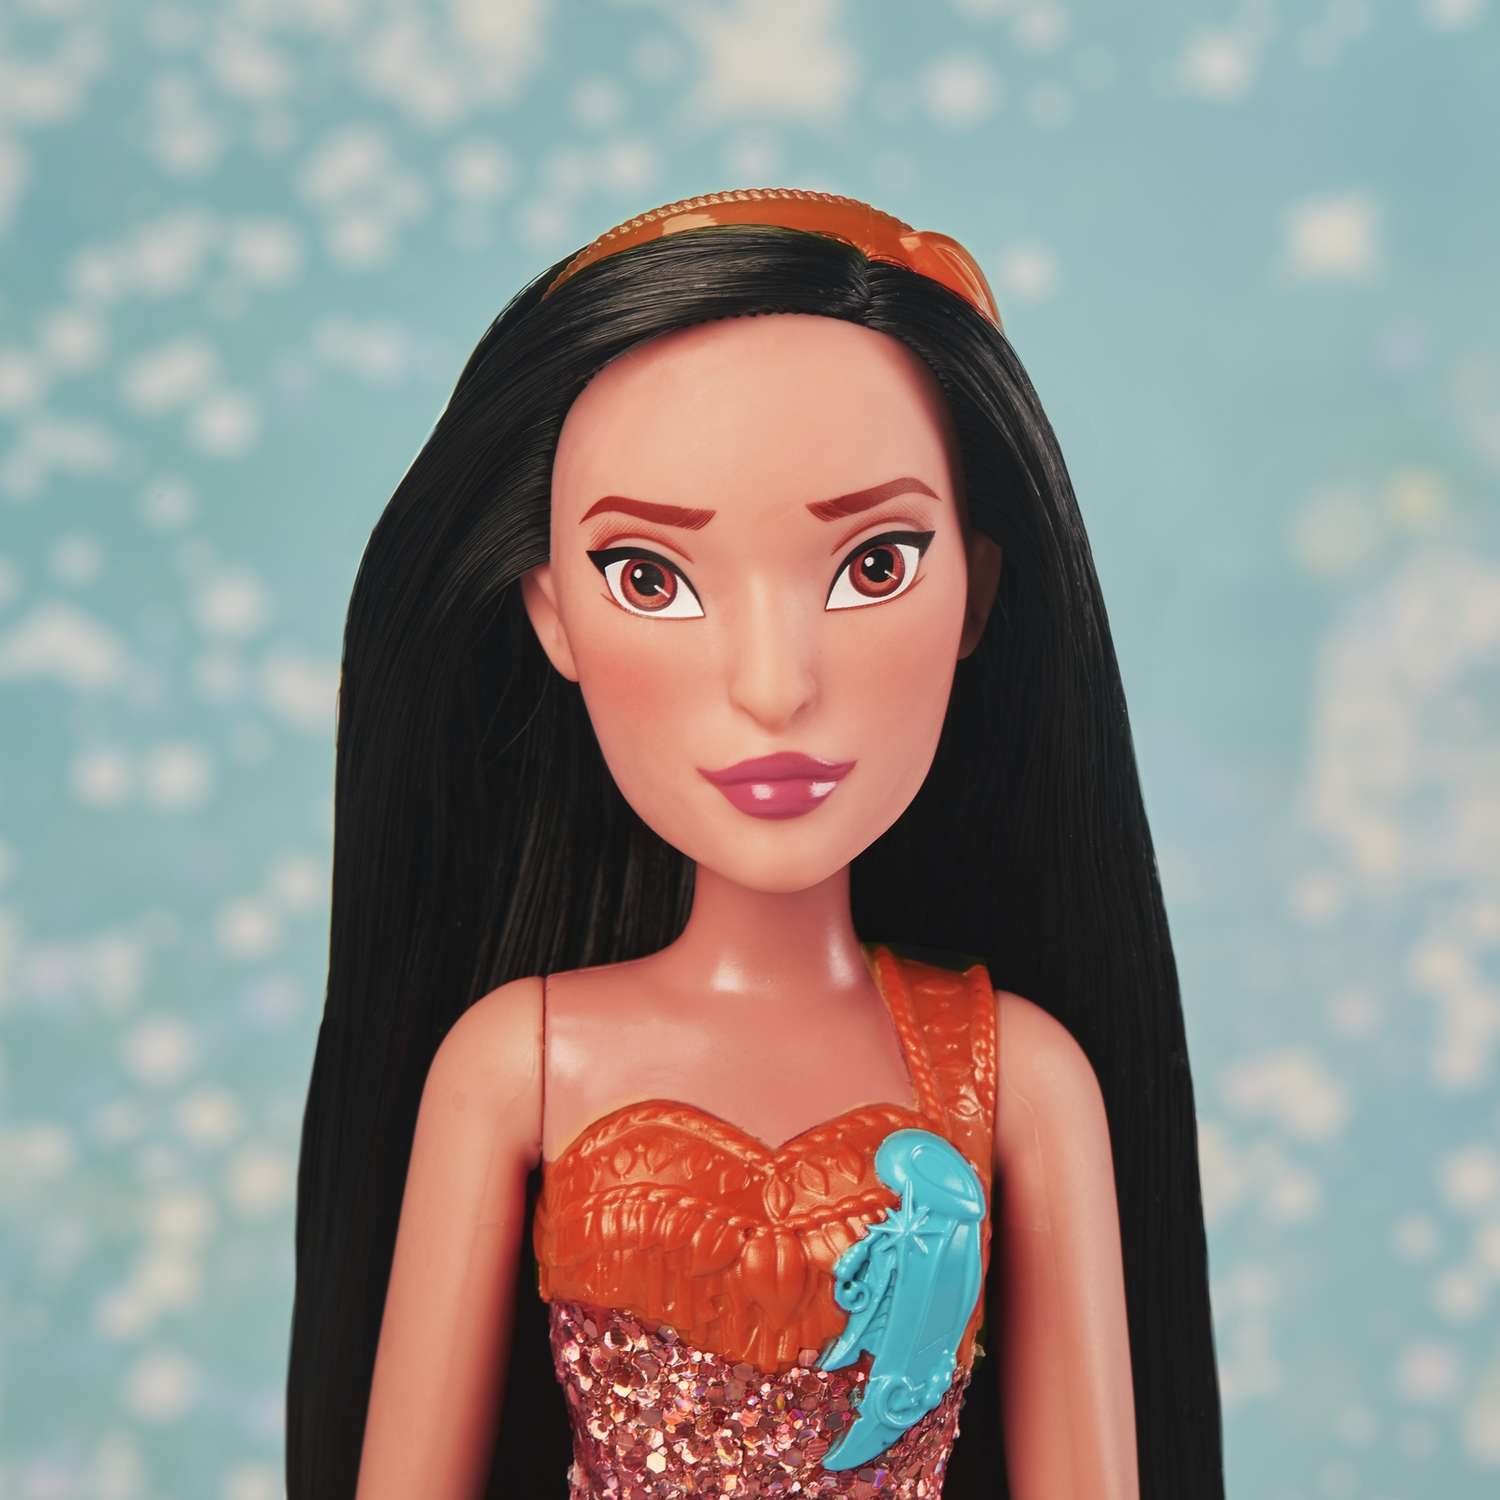 Кукла Disney Princess Hasbro C Покахонтас E4165EU4 E4022EU4 - фото 17